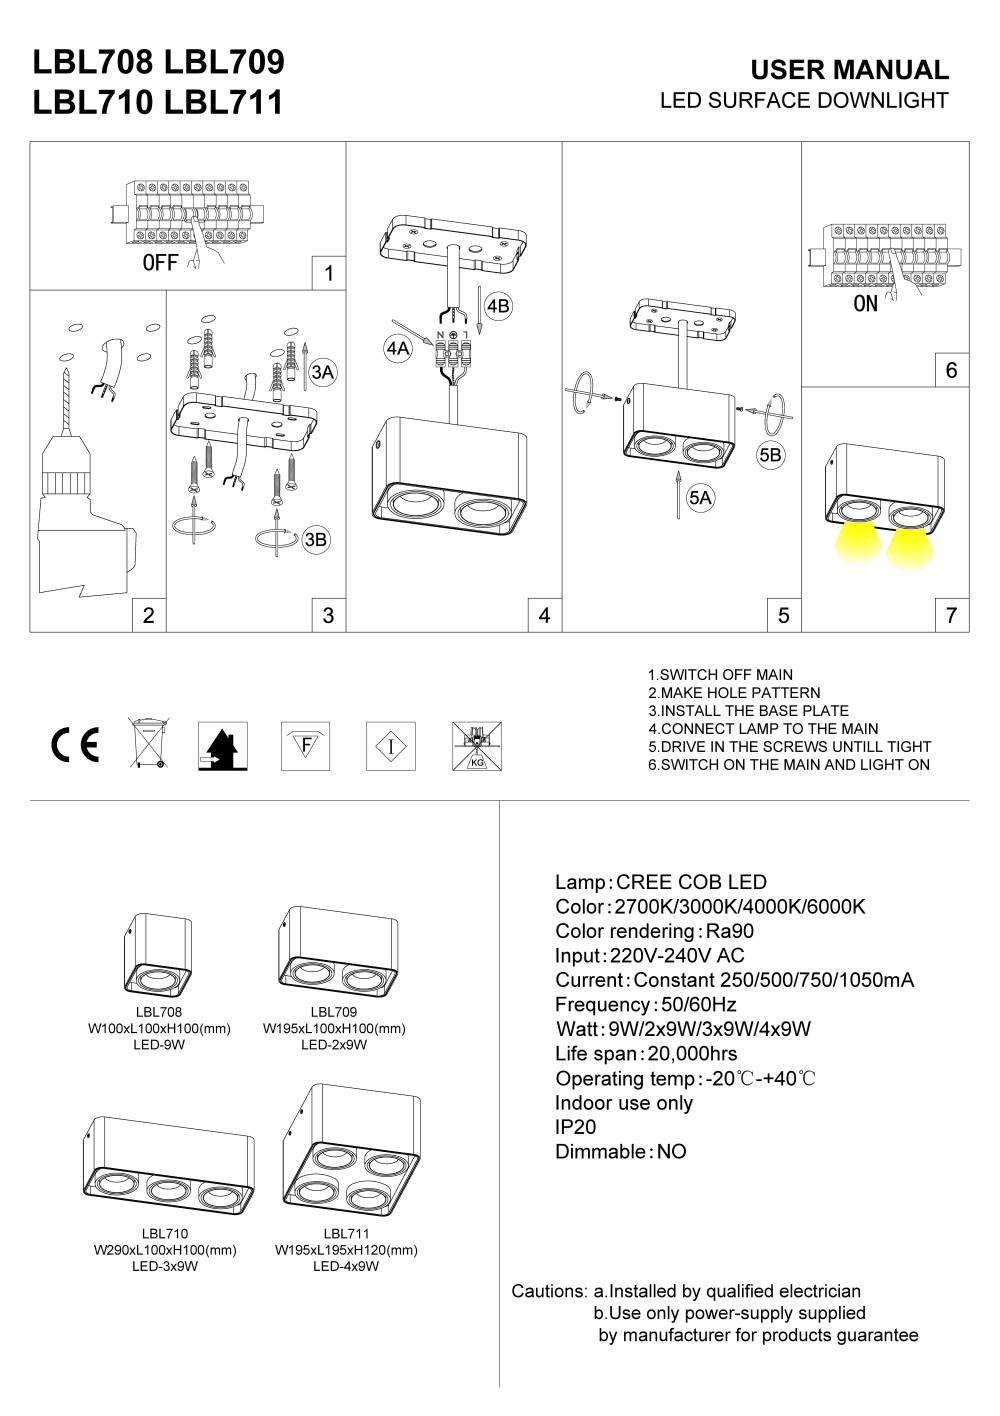 LBL708 LBL709 LBL710 LBL711 surface mounted LED downlight installation guide